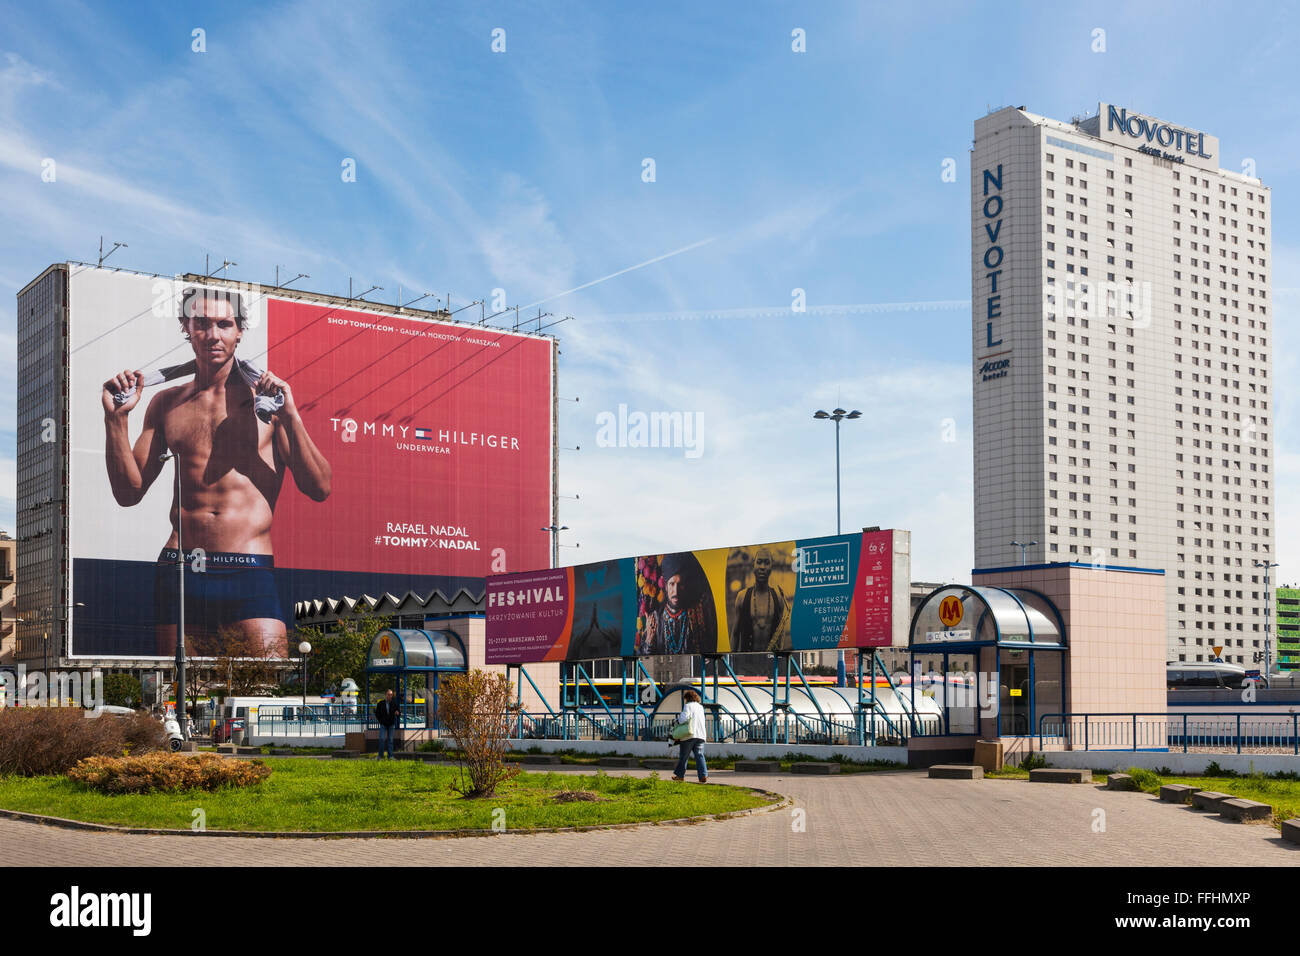 Rafael Nadal su Tommy Hilfiger billboard nel centro di Varsavia, Polonia Foto Stock